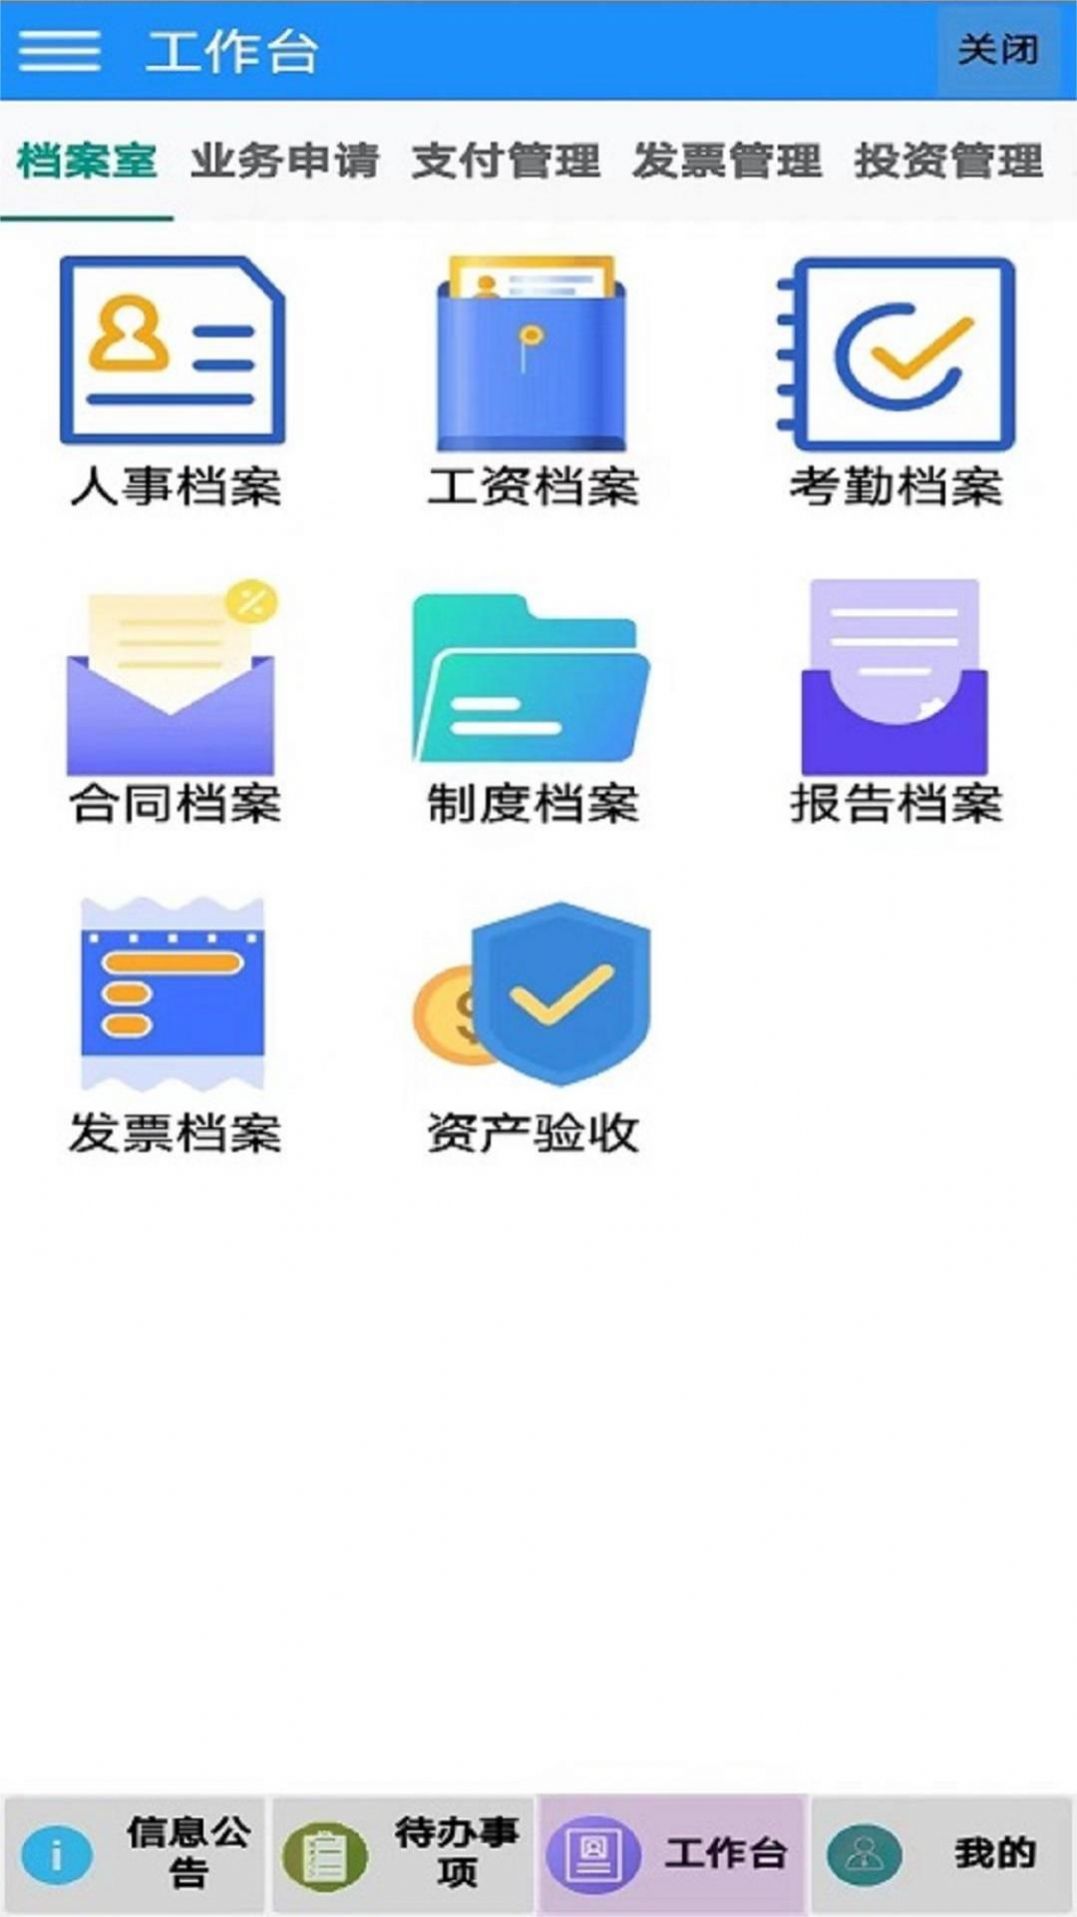 海程云办公软件下载app官网版